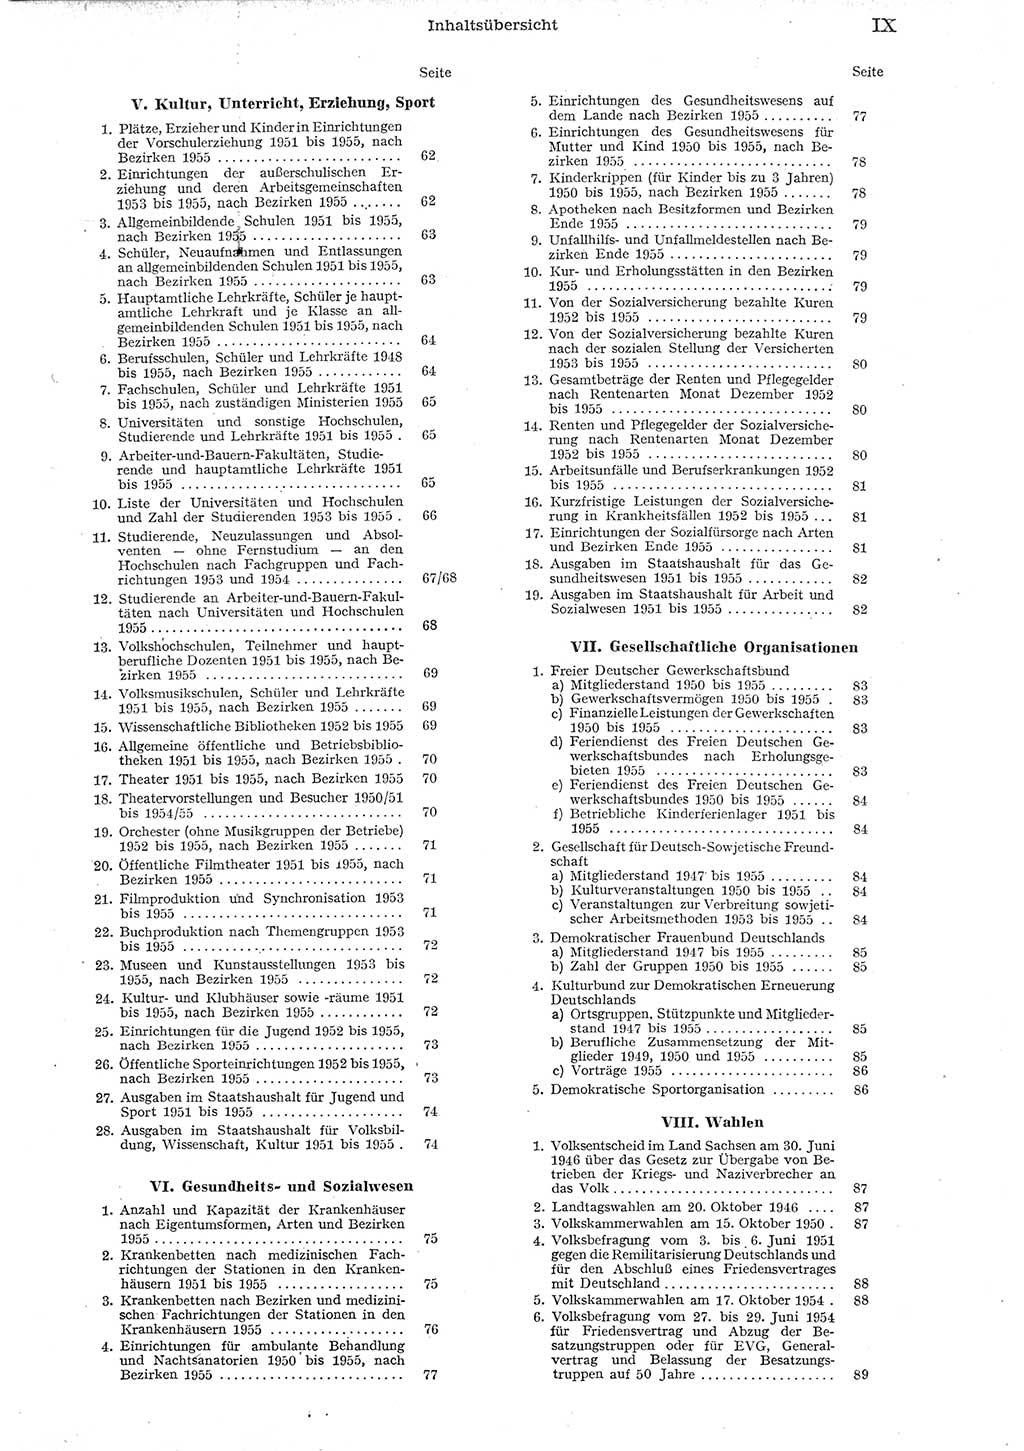 Statistisches Jahrbuch der Deutschen Demokratischen Republik (DDR) 1955, Seite 9 (Stat. Jb. DDR 1955, S. 9)